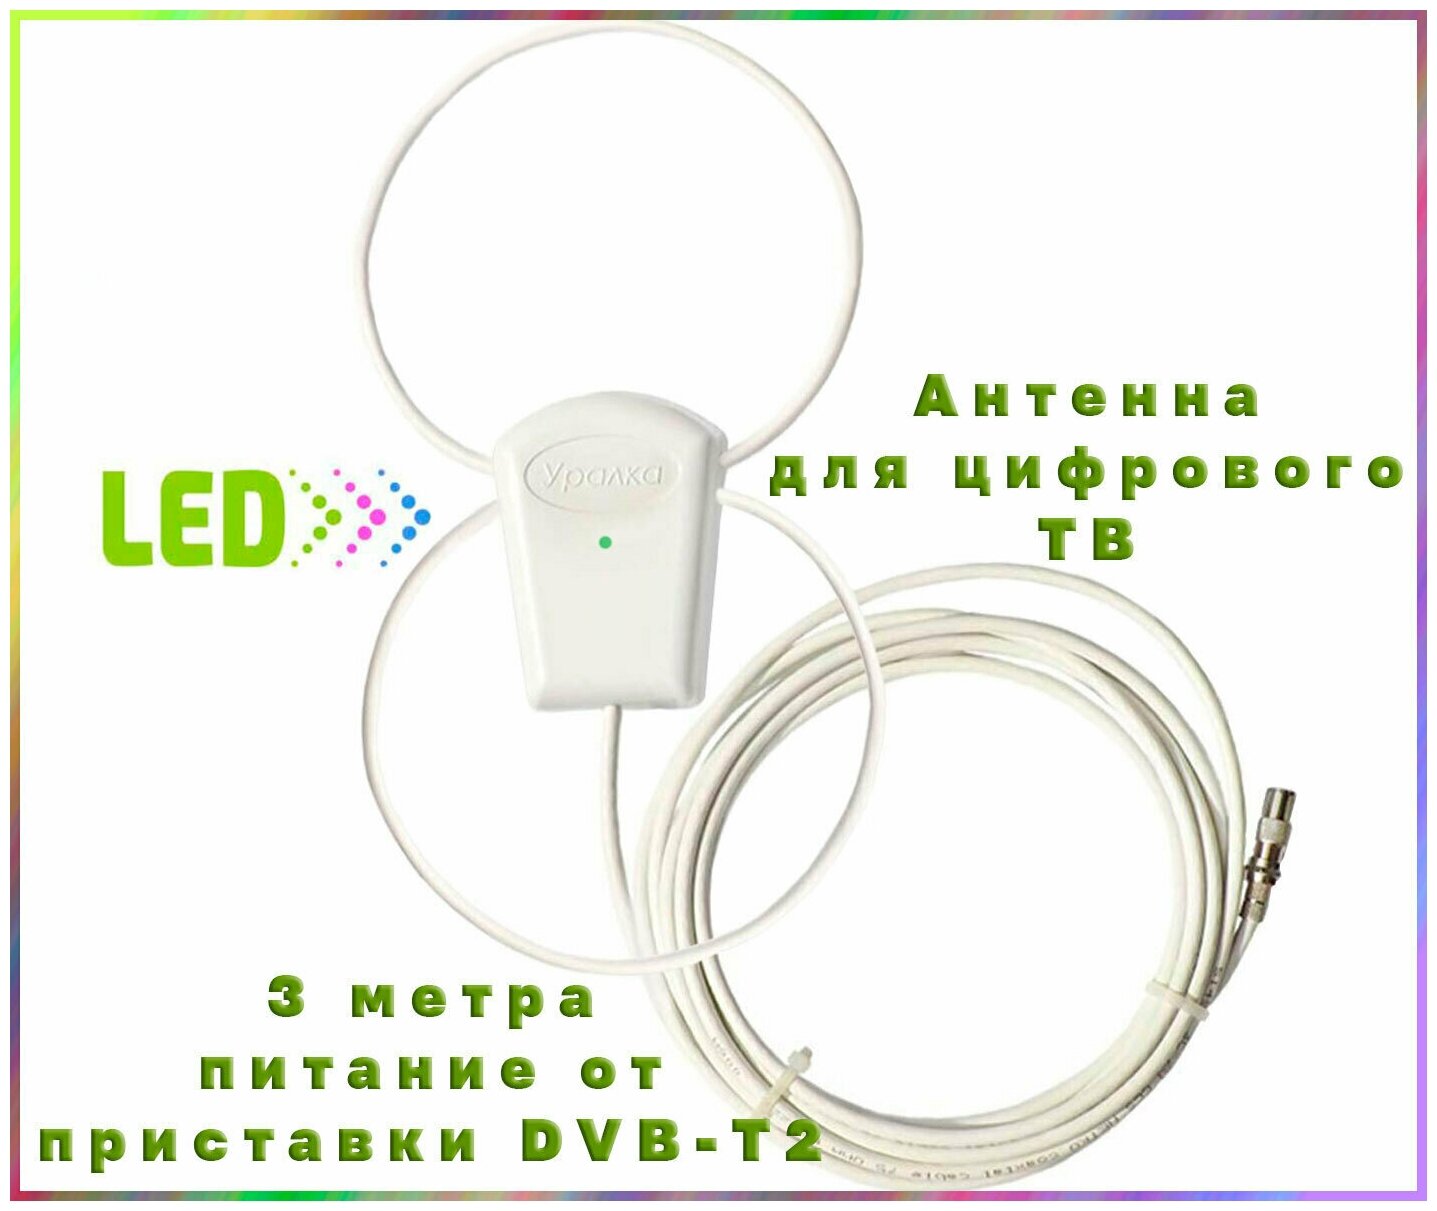 Антенна активная для цифрового DVB-T2 ТВ "Уралка TWIN 3 метра" с присоской